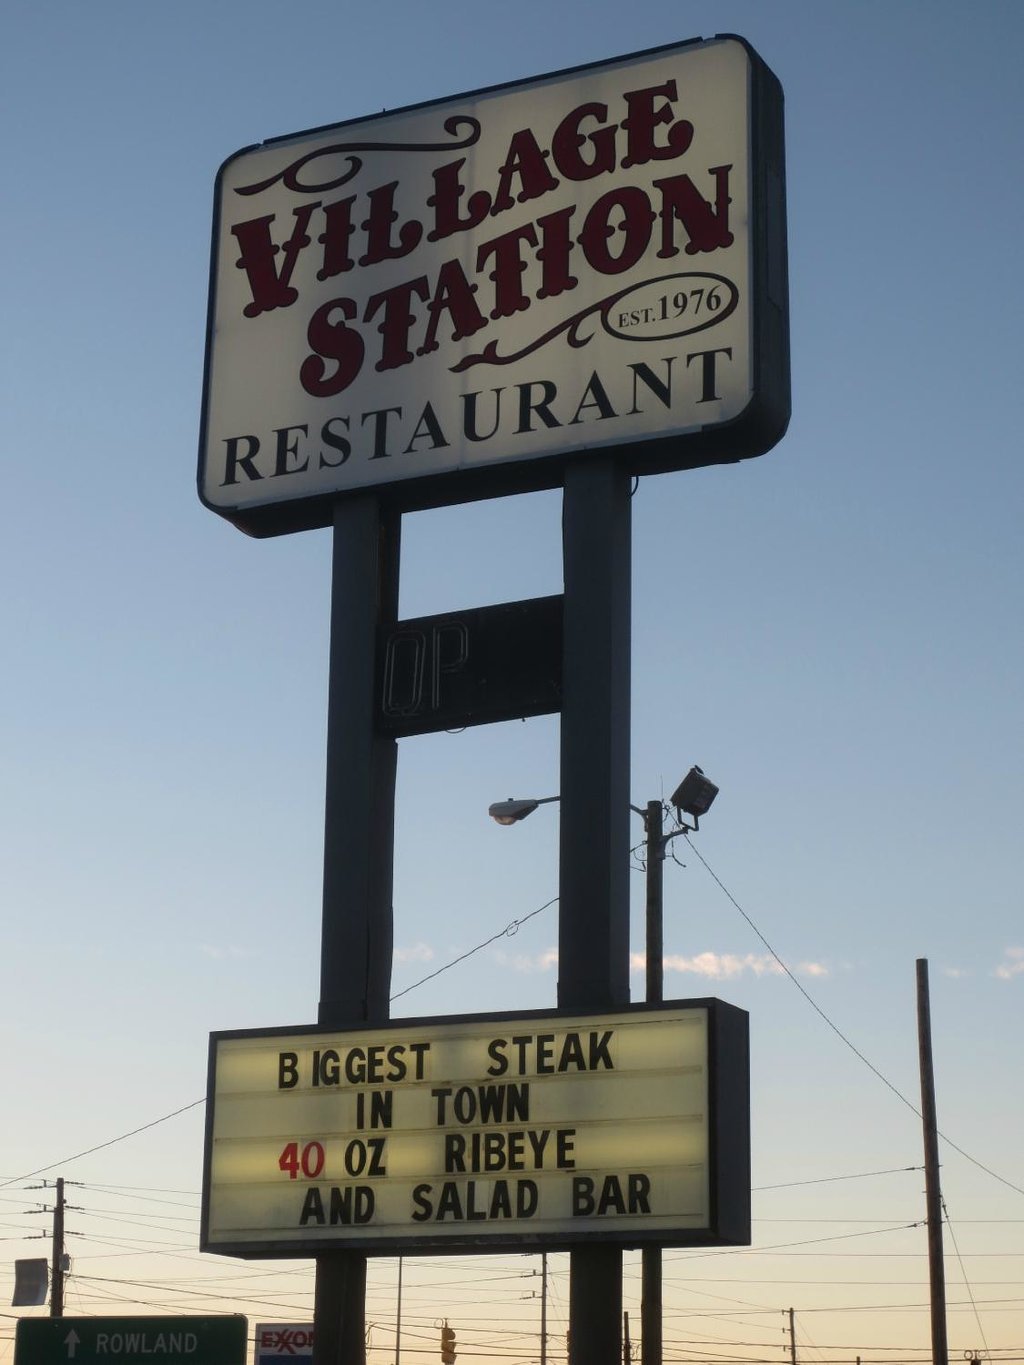 Village Station 1893 Restaurant